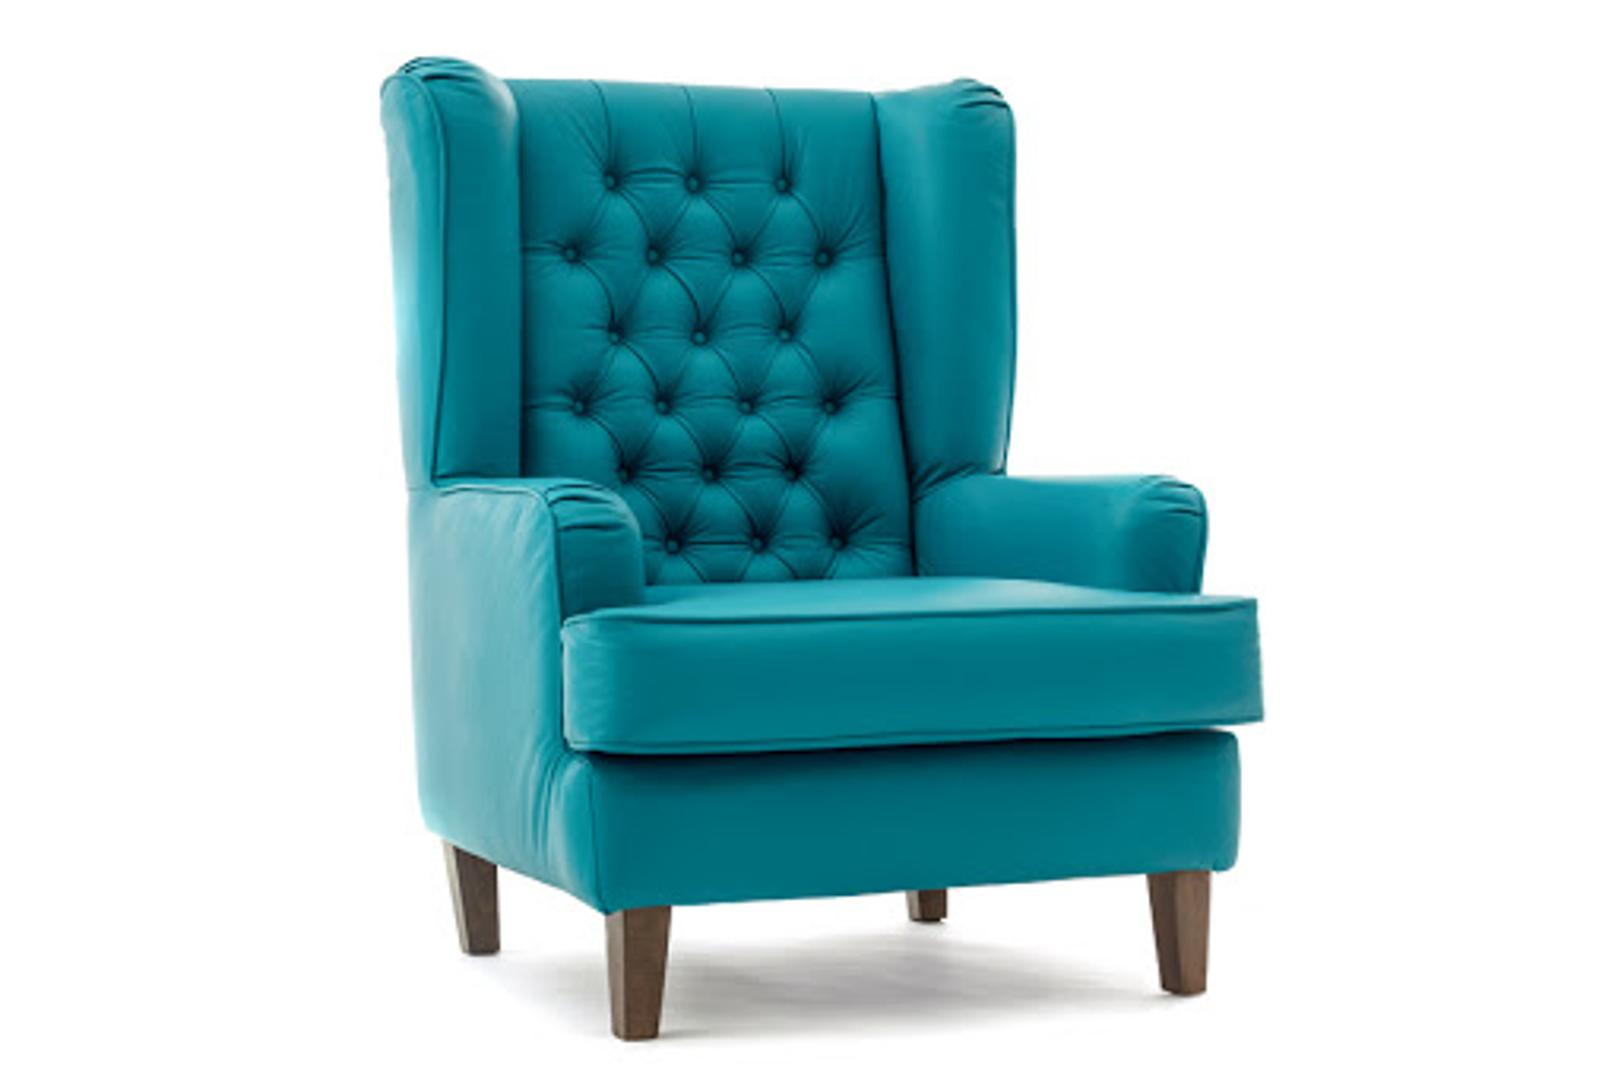 Raskošna, kraljevski plava fotelja stvorena je za uživanje. Moćete ju naći na Asosu